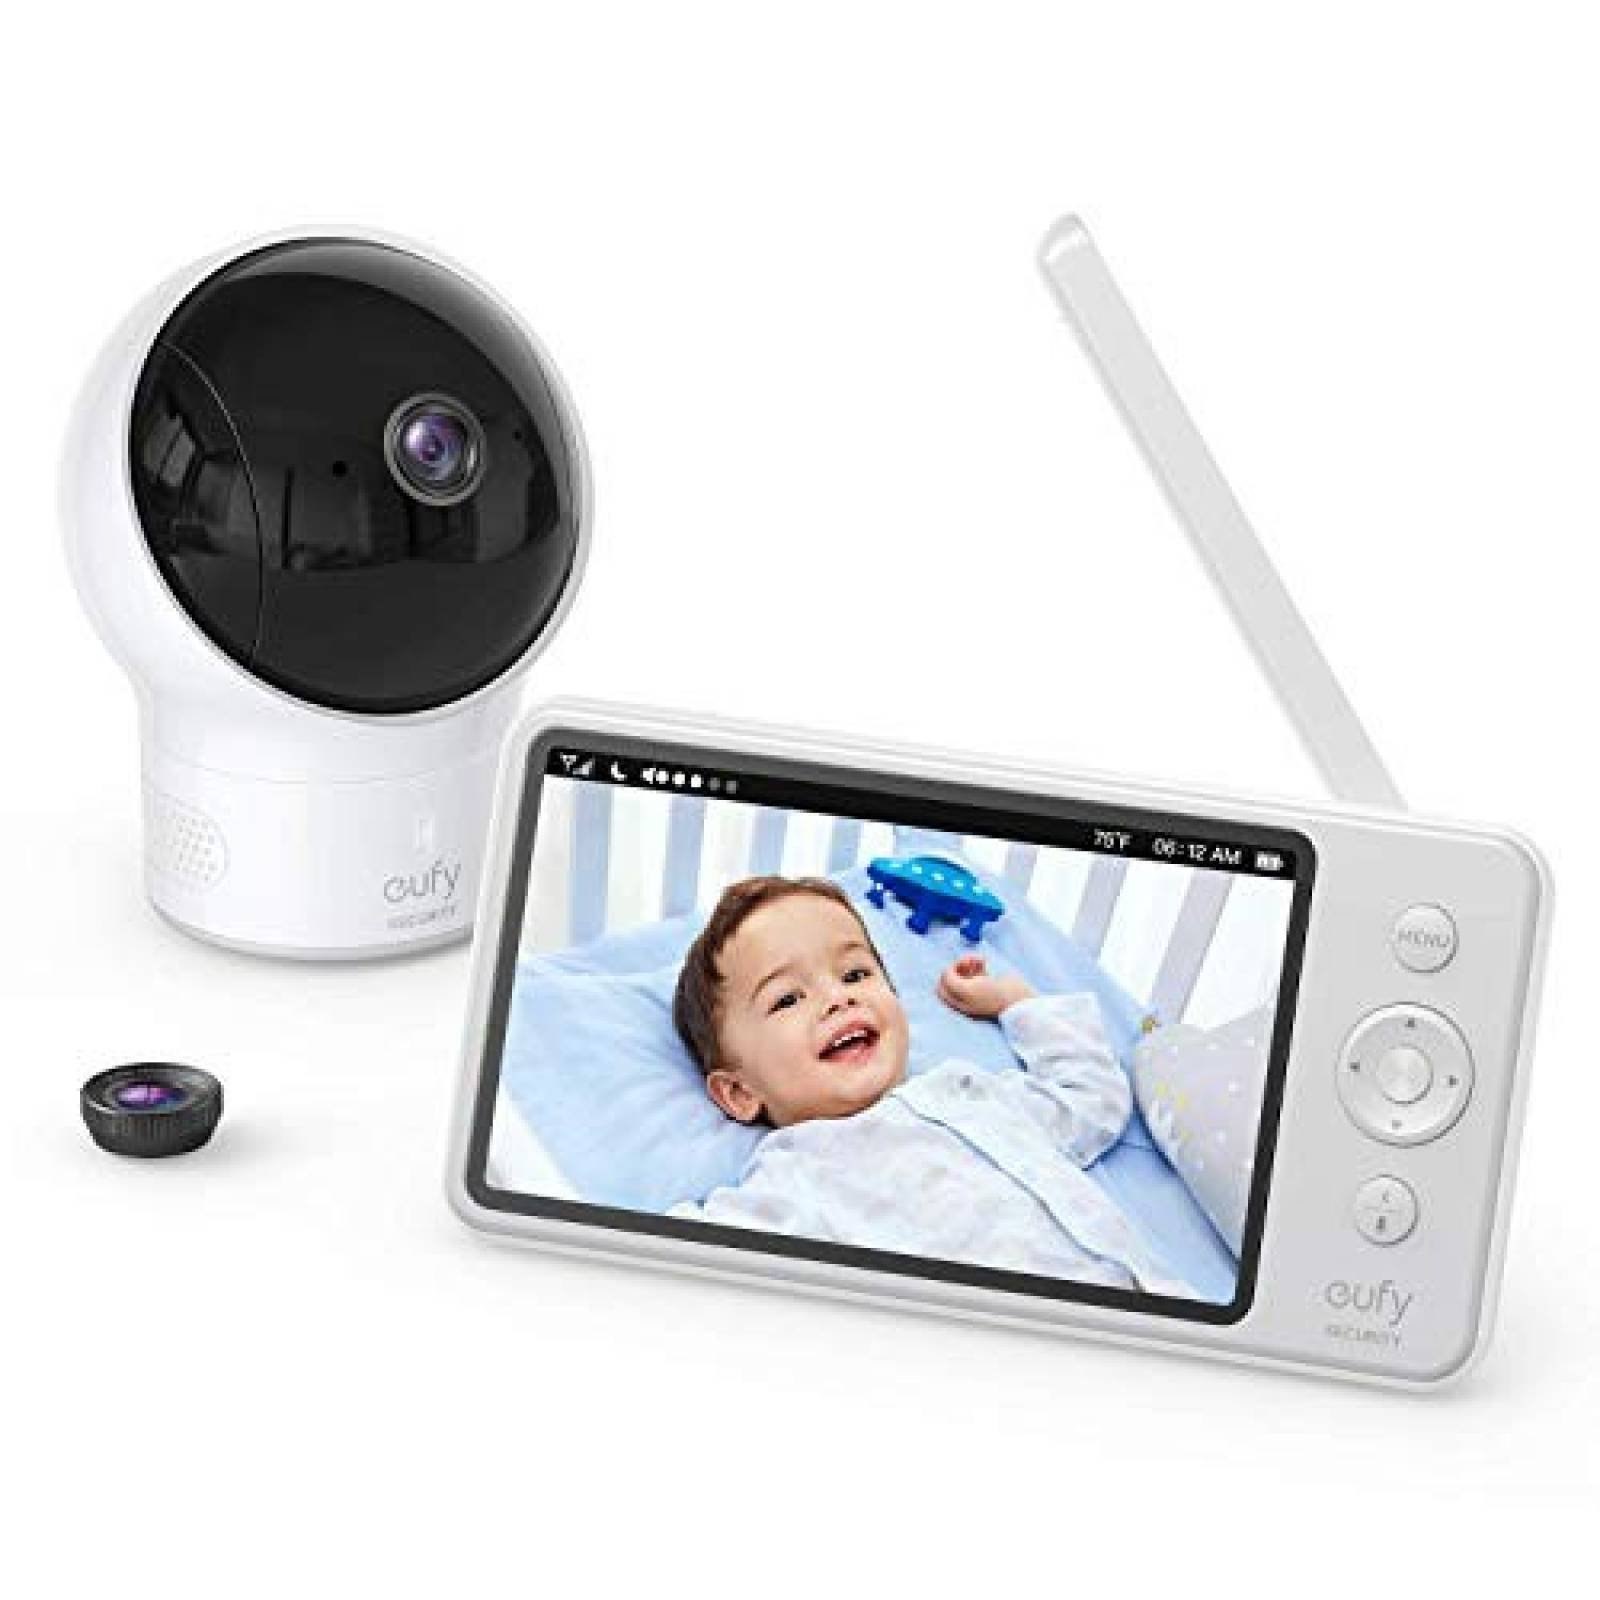 Monitor para bebé eufy pantalla LCD 5" vision nocturna